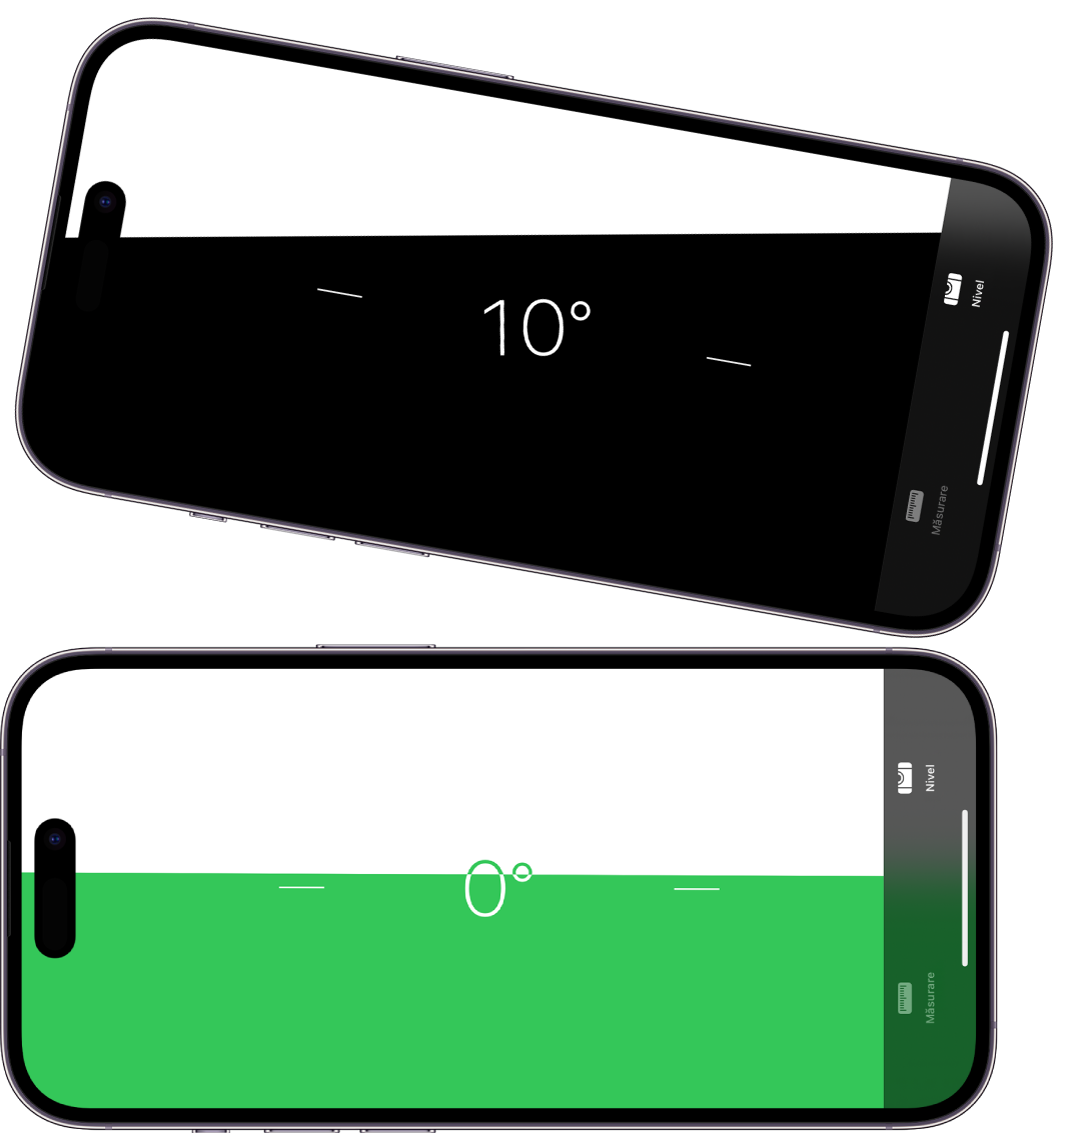 Ecranul nivelei din aplicația Măsurare. În partea de sus, iPhone-ul este înclinat la un unghi de 10 grade; în partea de jos, iPhone-ul este drept.